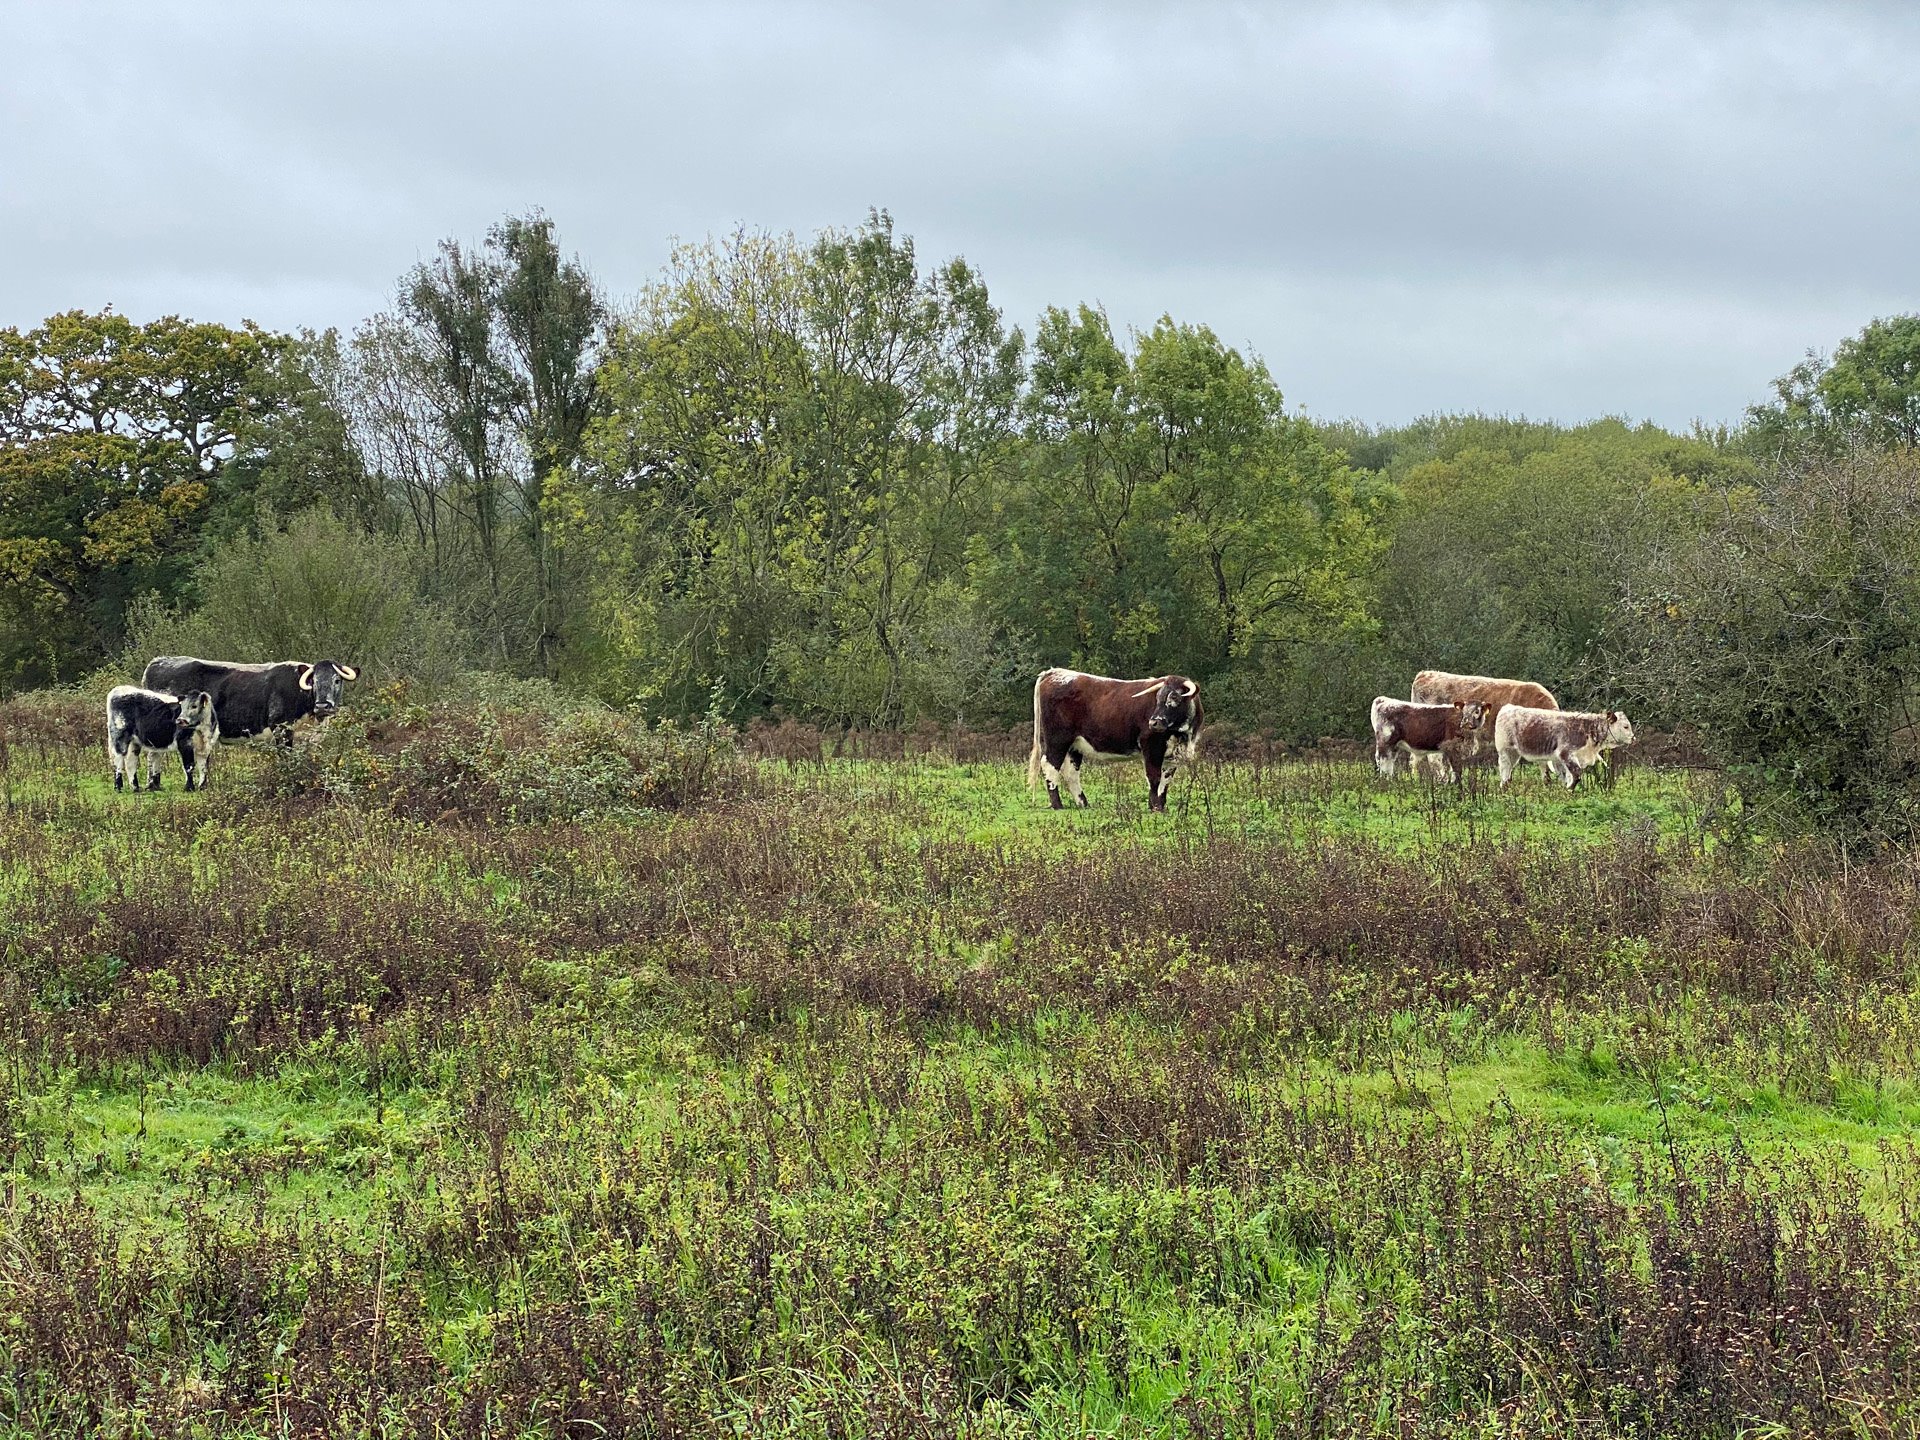 Wild cattle grazing at knepp estate rewilding project in Suusex